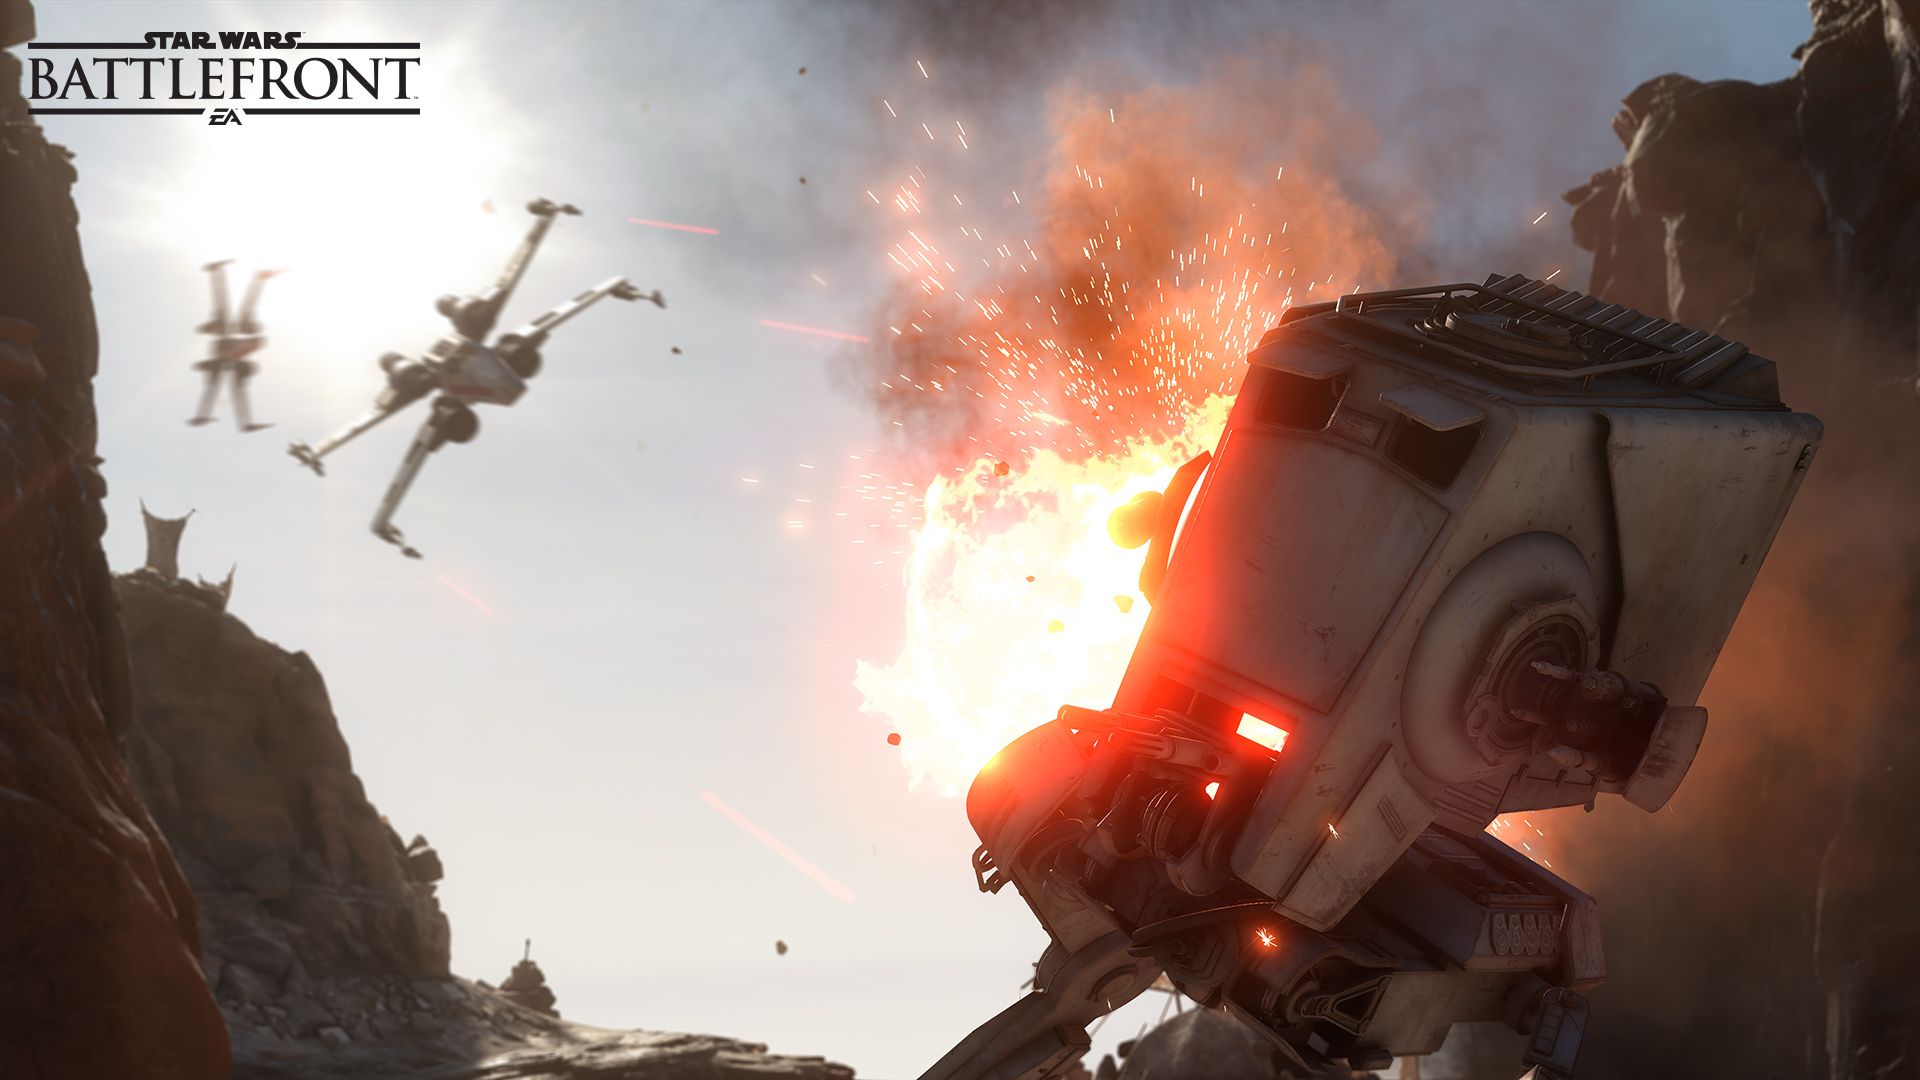 Star Wars: Battlefront 'Fighter Squadron' mode revealed. Informed